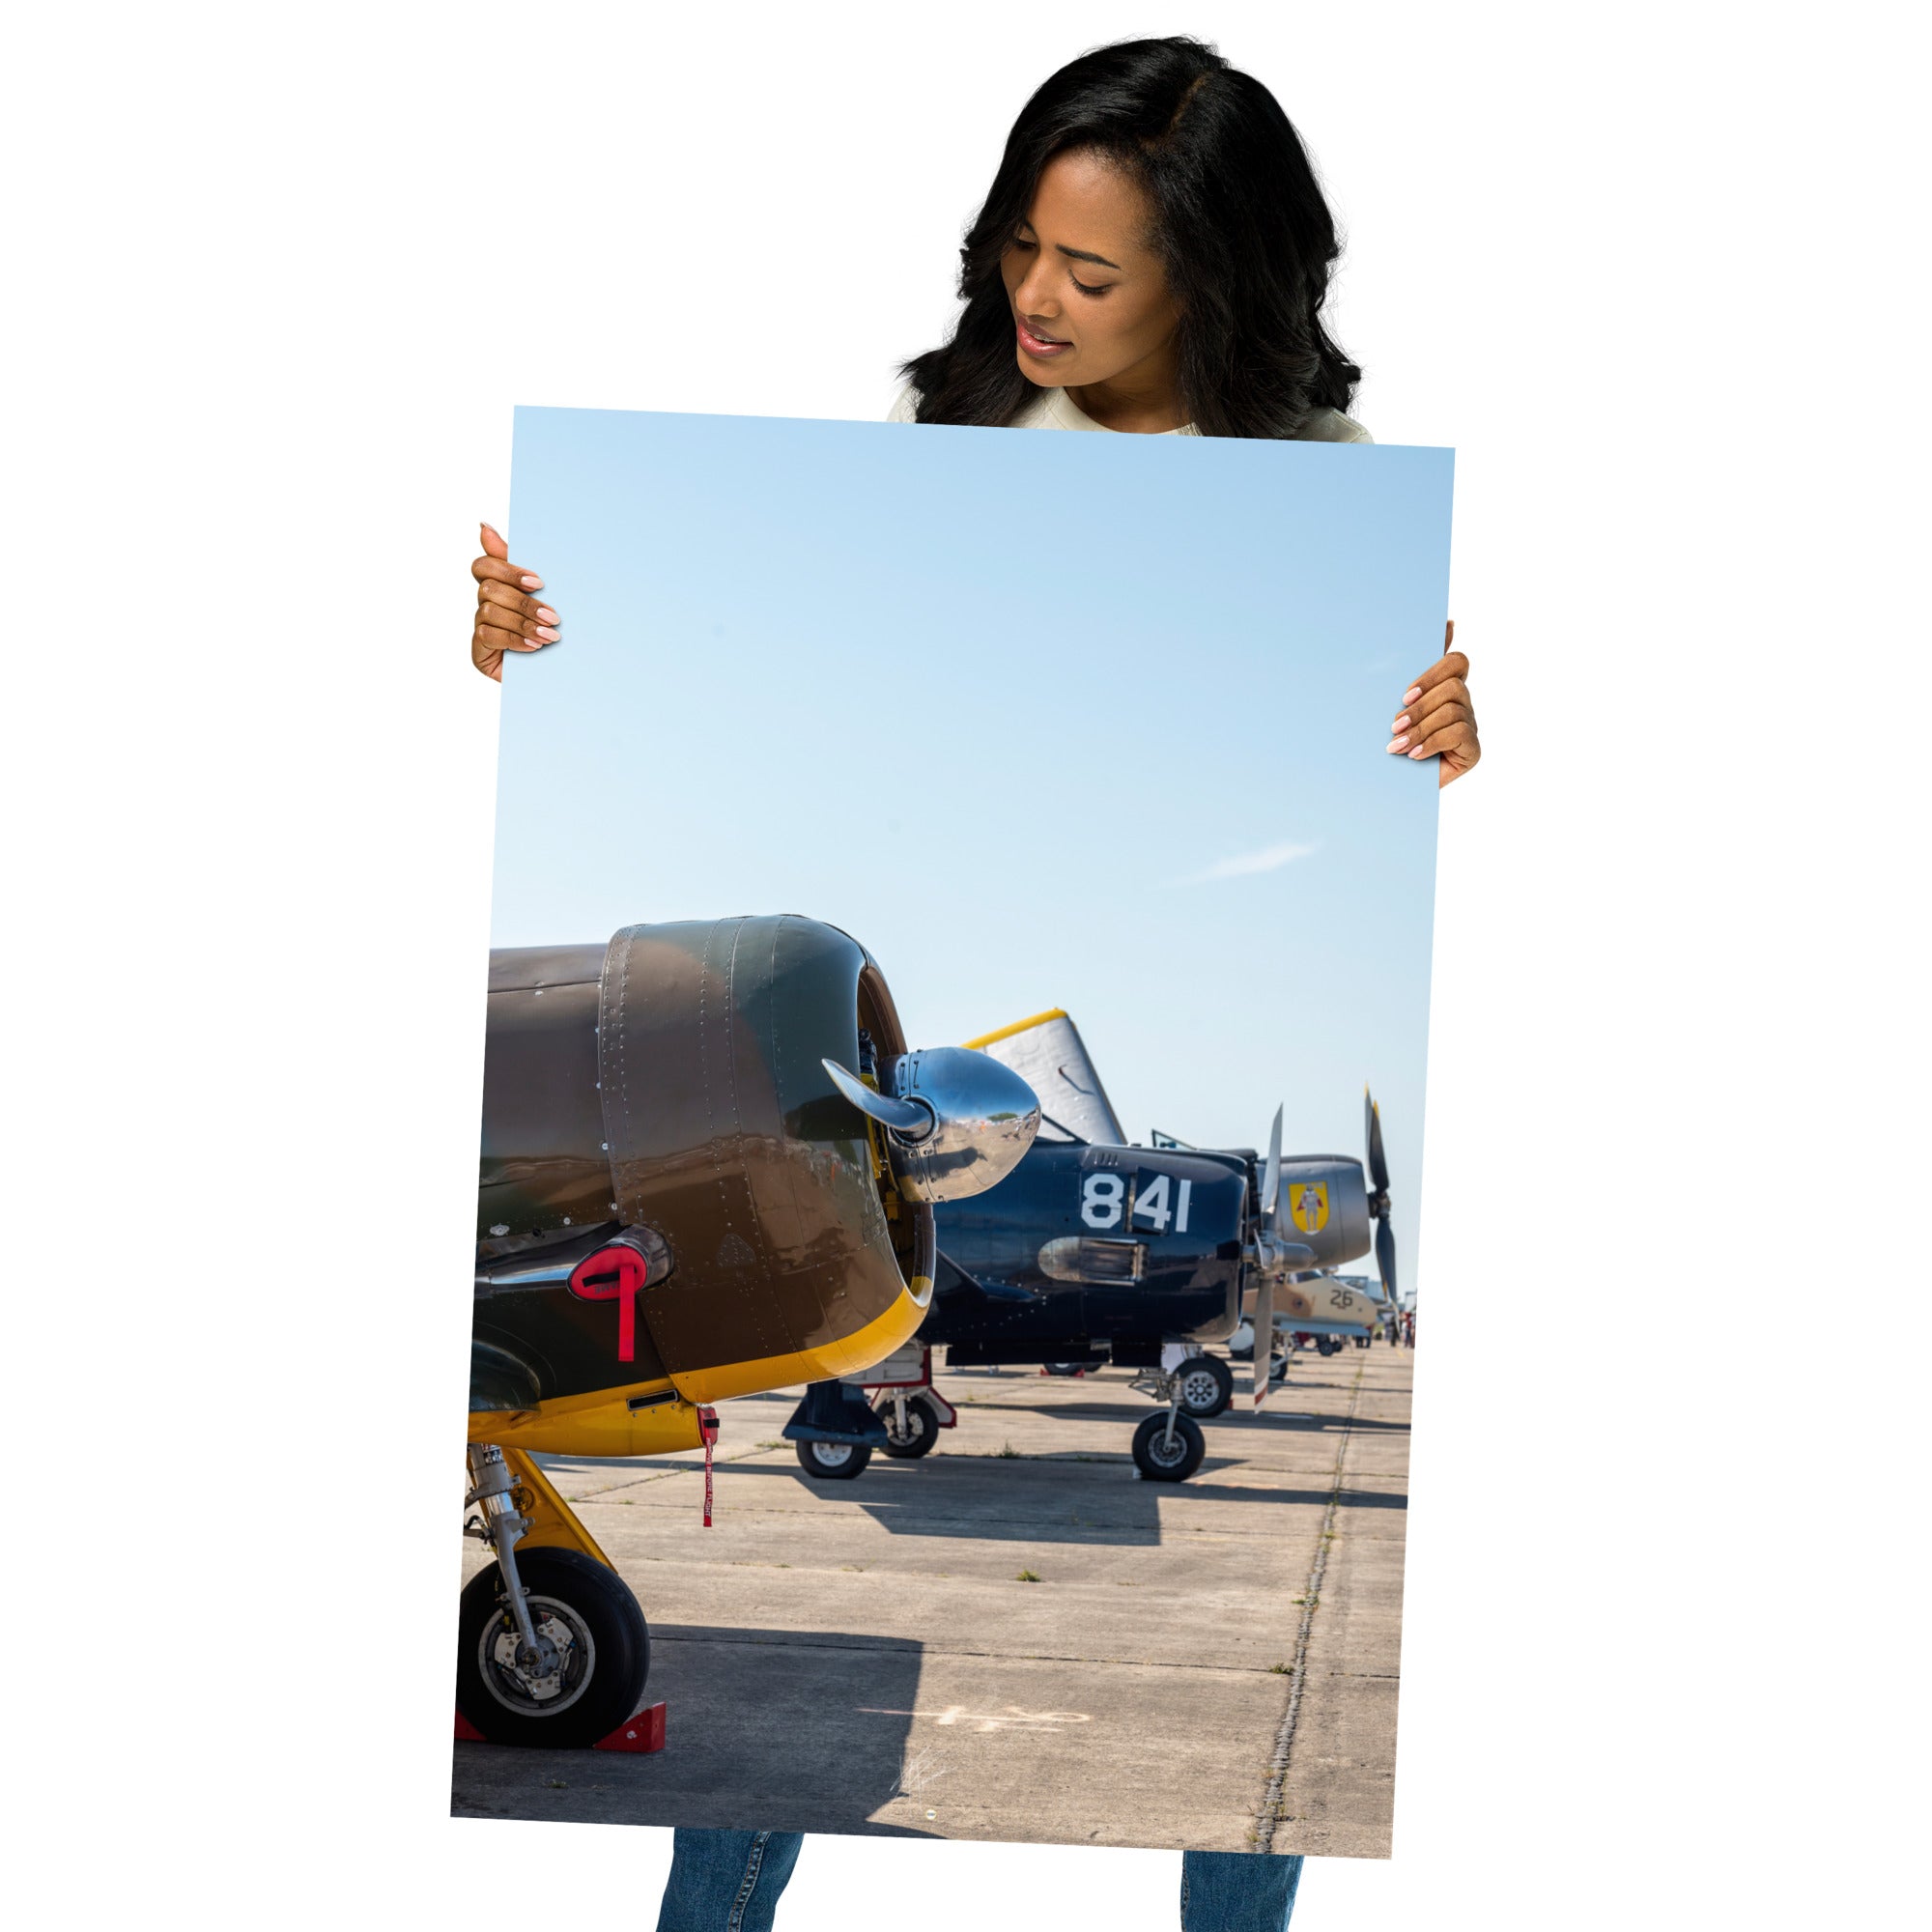 Photographie impressionnante 'Aviation' dépeignant un alignement d'avions de guerre vintage, imprimée sur un papier d'excellence.